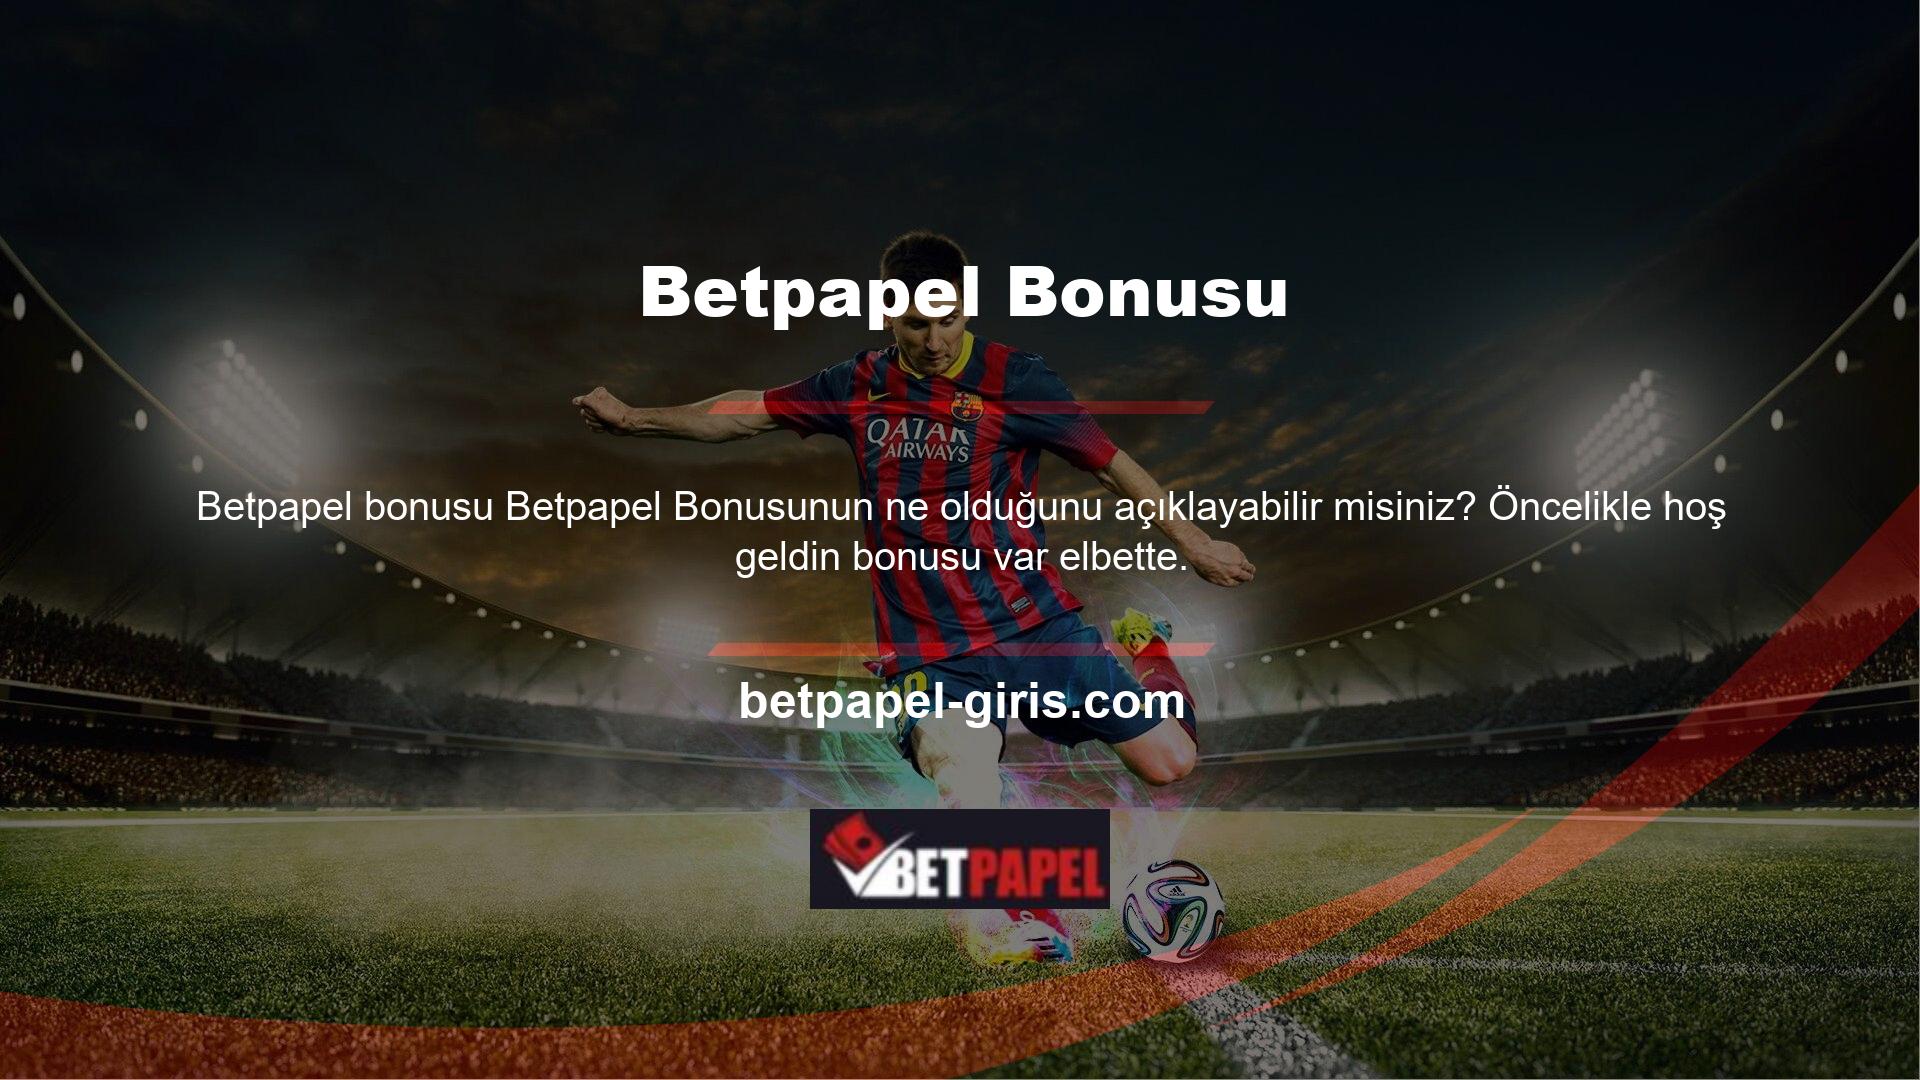 Betpapel sitesindeki hoş geldin bonusu üyelere özeldir ve diğer siteler tarafından talep edilemez